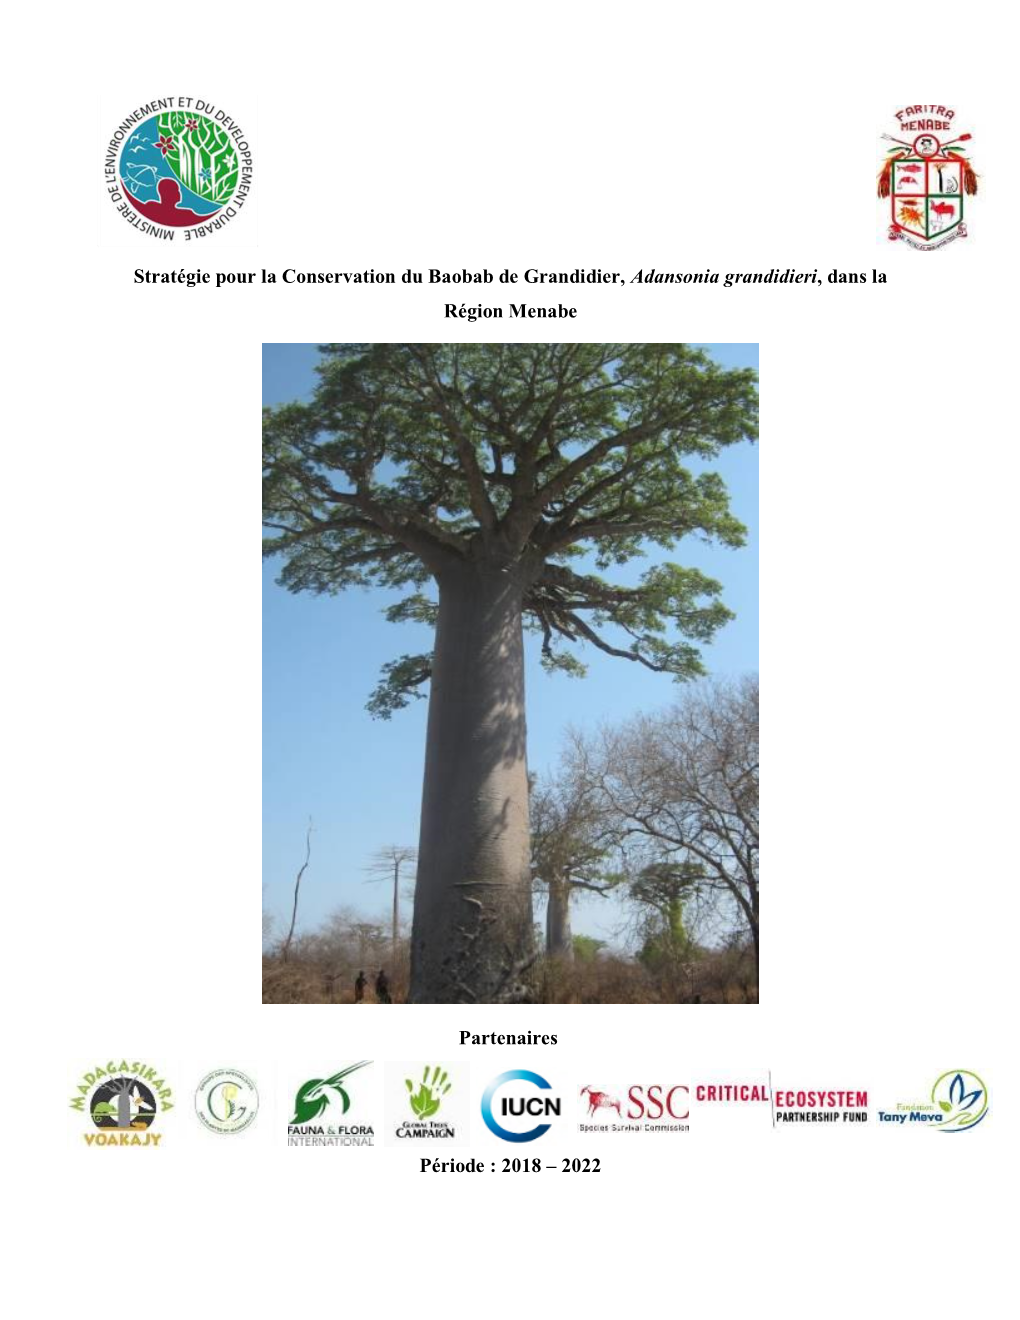 Stratégie Pour La Conservation Du Baobab De Grandidier, Adansonia Grandidieri, Dans La Région Menabe